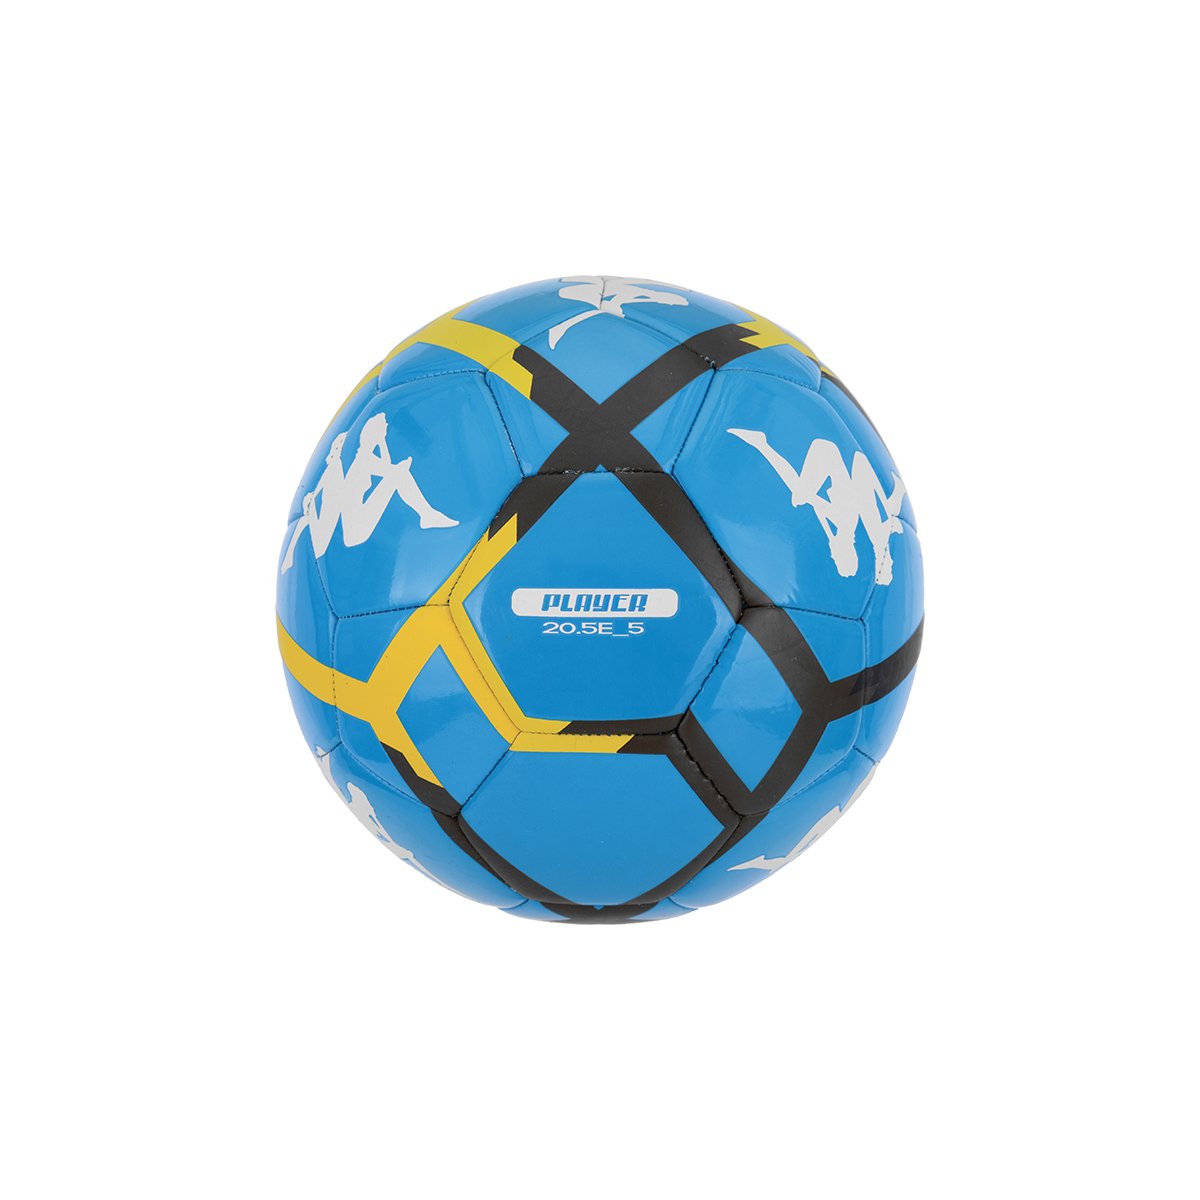 Balón de fútbol unisex 20.5E Azul - Imagen 1